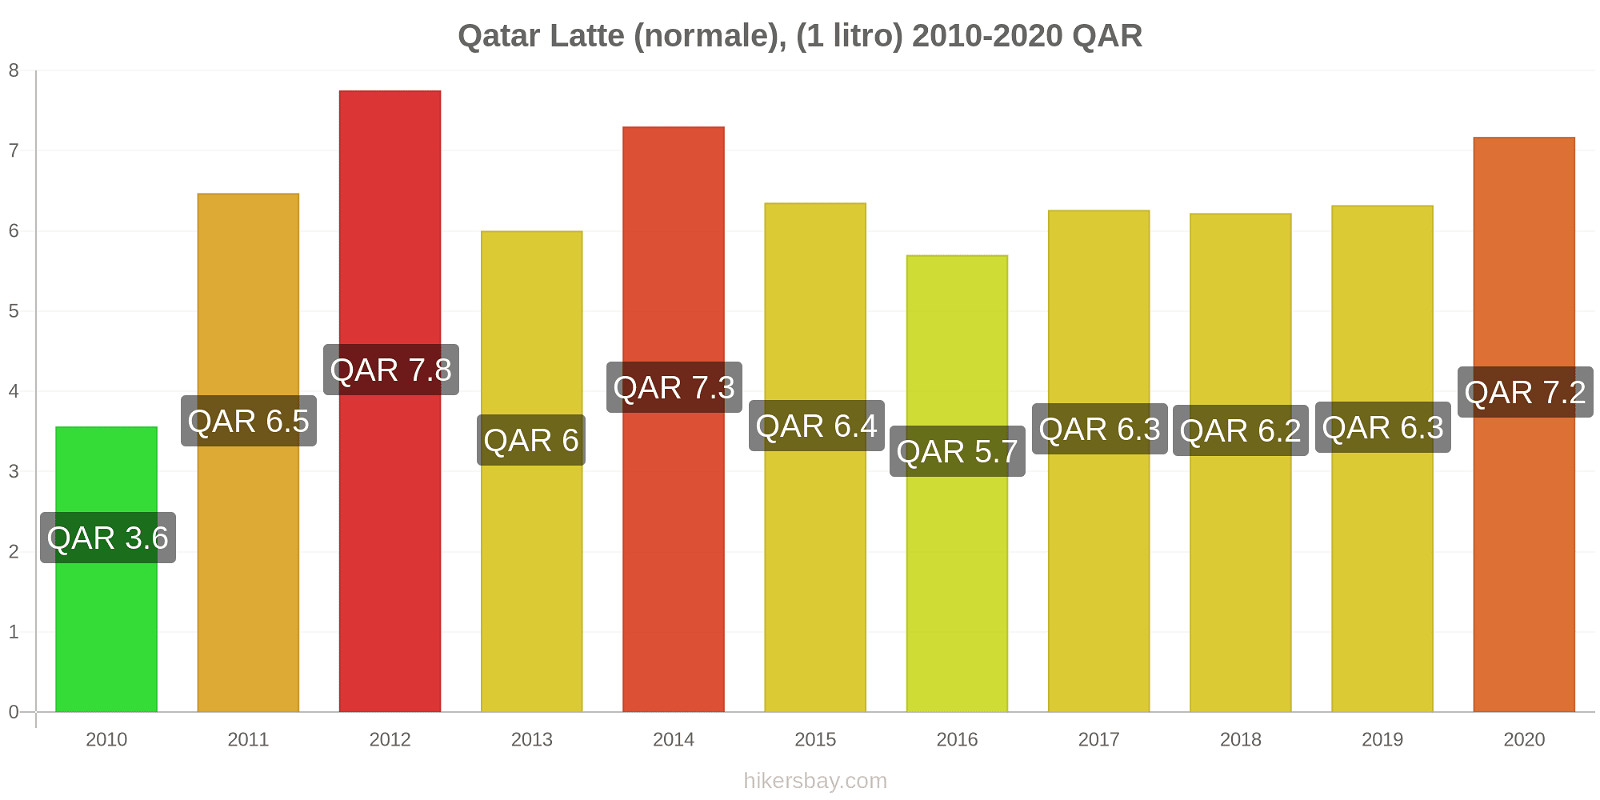 Qatar variazioni di prezzo Latte (1 litro) hikersbay.com